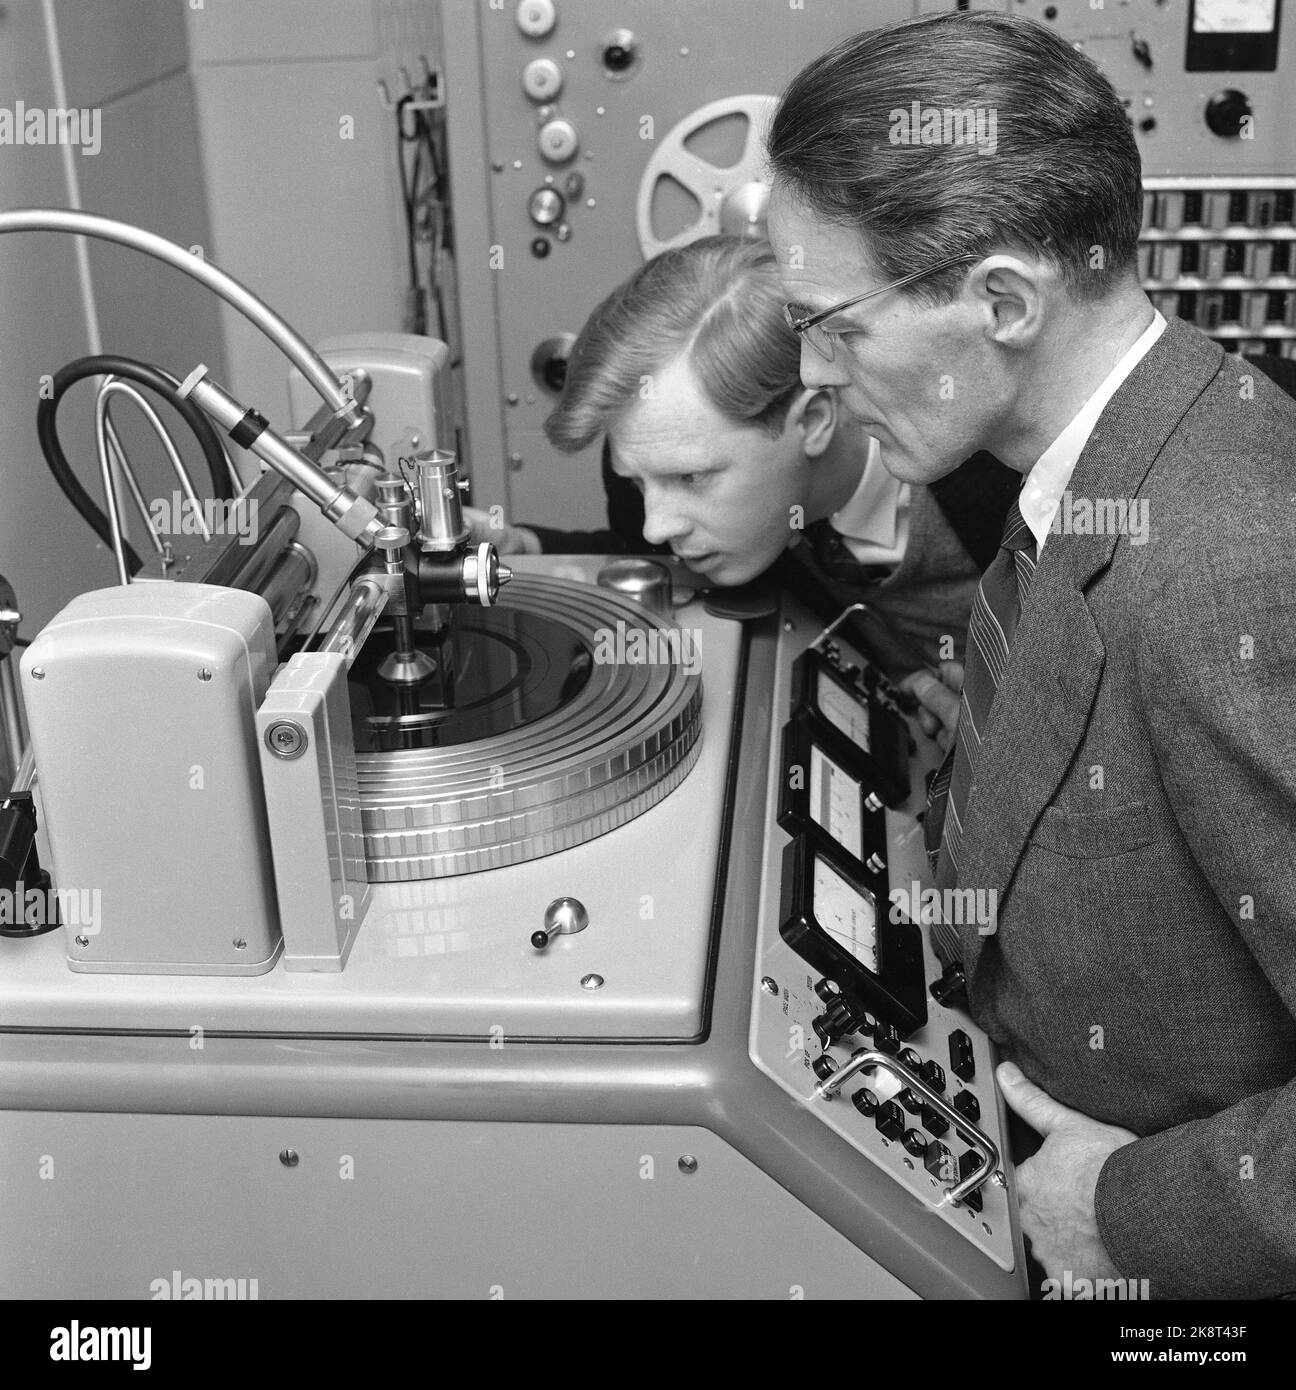 Oslo, 18. Mai 1957. „The Monn-Keys“ stellt Platten her, hier eine Maschine, die während der Plattenherstellung verwendet wird. Arne Bendiksen interessiert sich dafür. Foto; Sverre A. Børretzen / Aktuell / NTB. Stockfoto